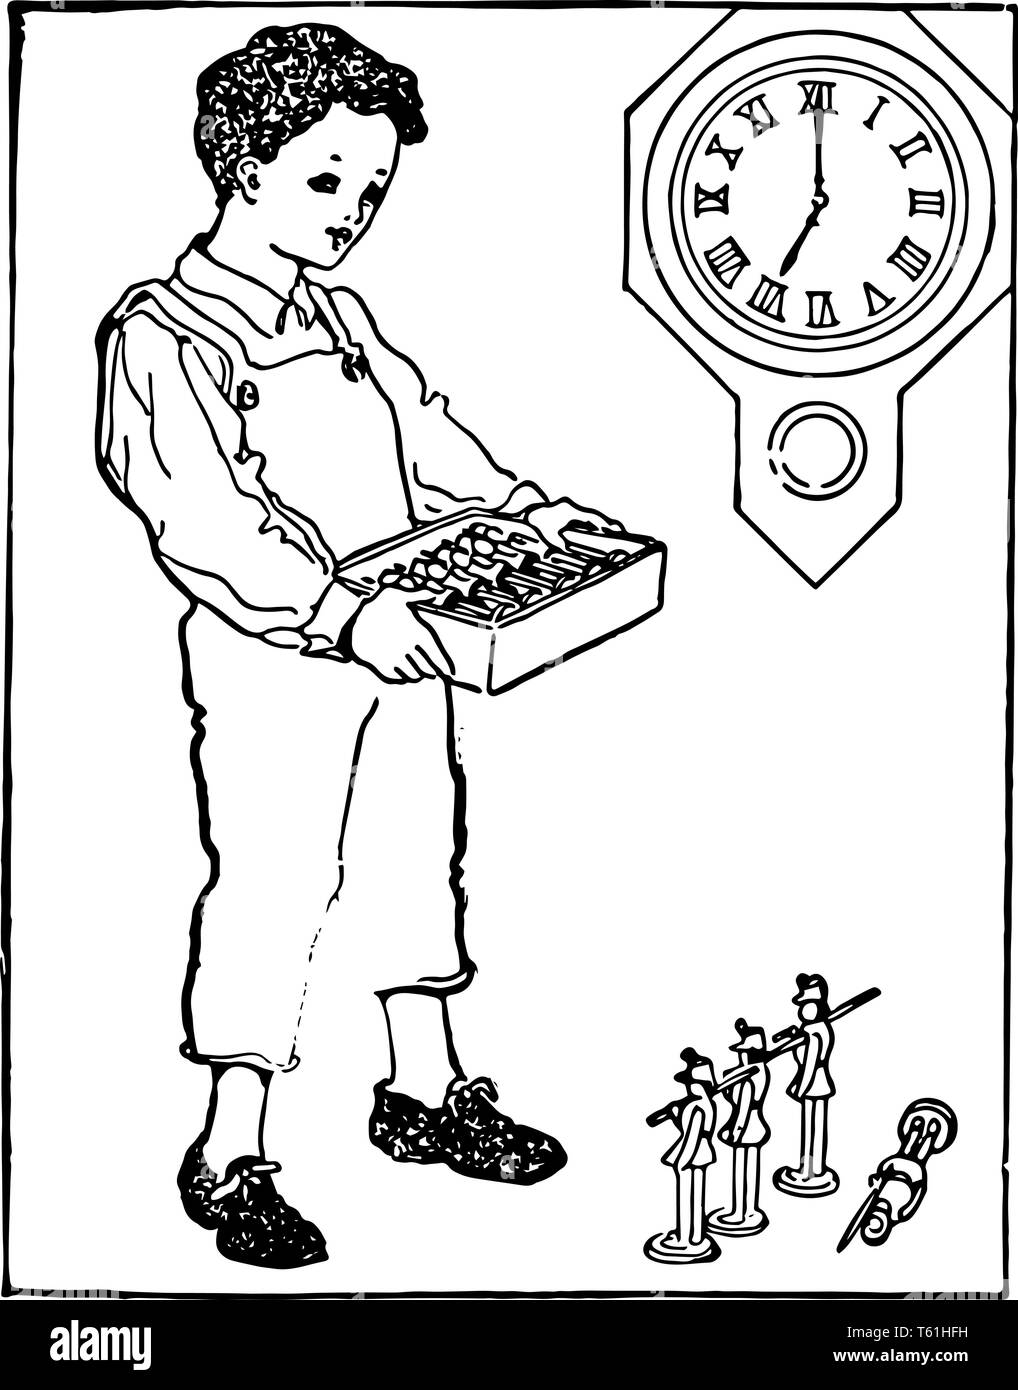 Un bambino in possesso di una scatola piena di giocattoli e di alcuni giocattoli sono messi a terra. Un orologio da parete dietro di lui che mostra tempo come 7:00, vintage disegno della linea o engra Illustrazione Vettoriale